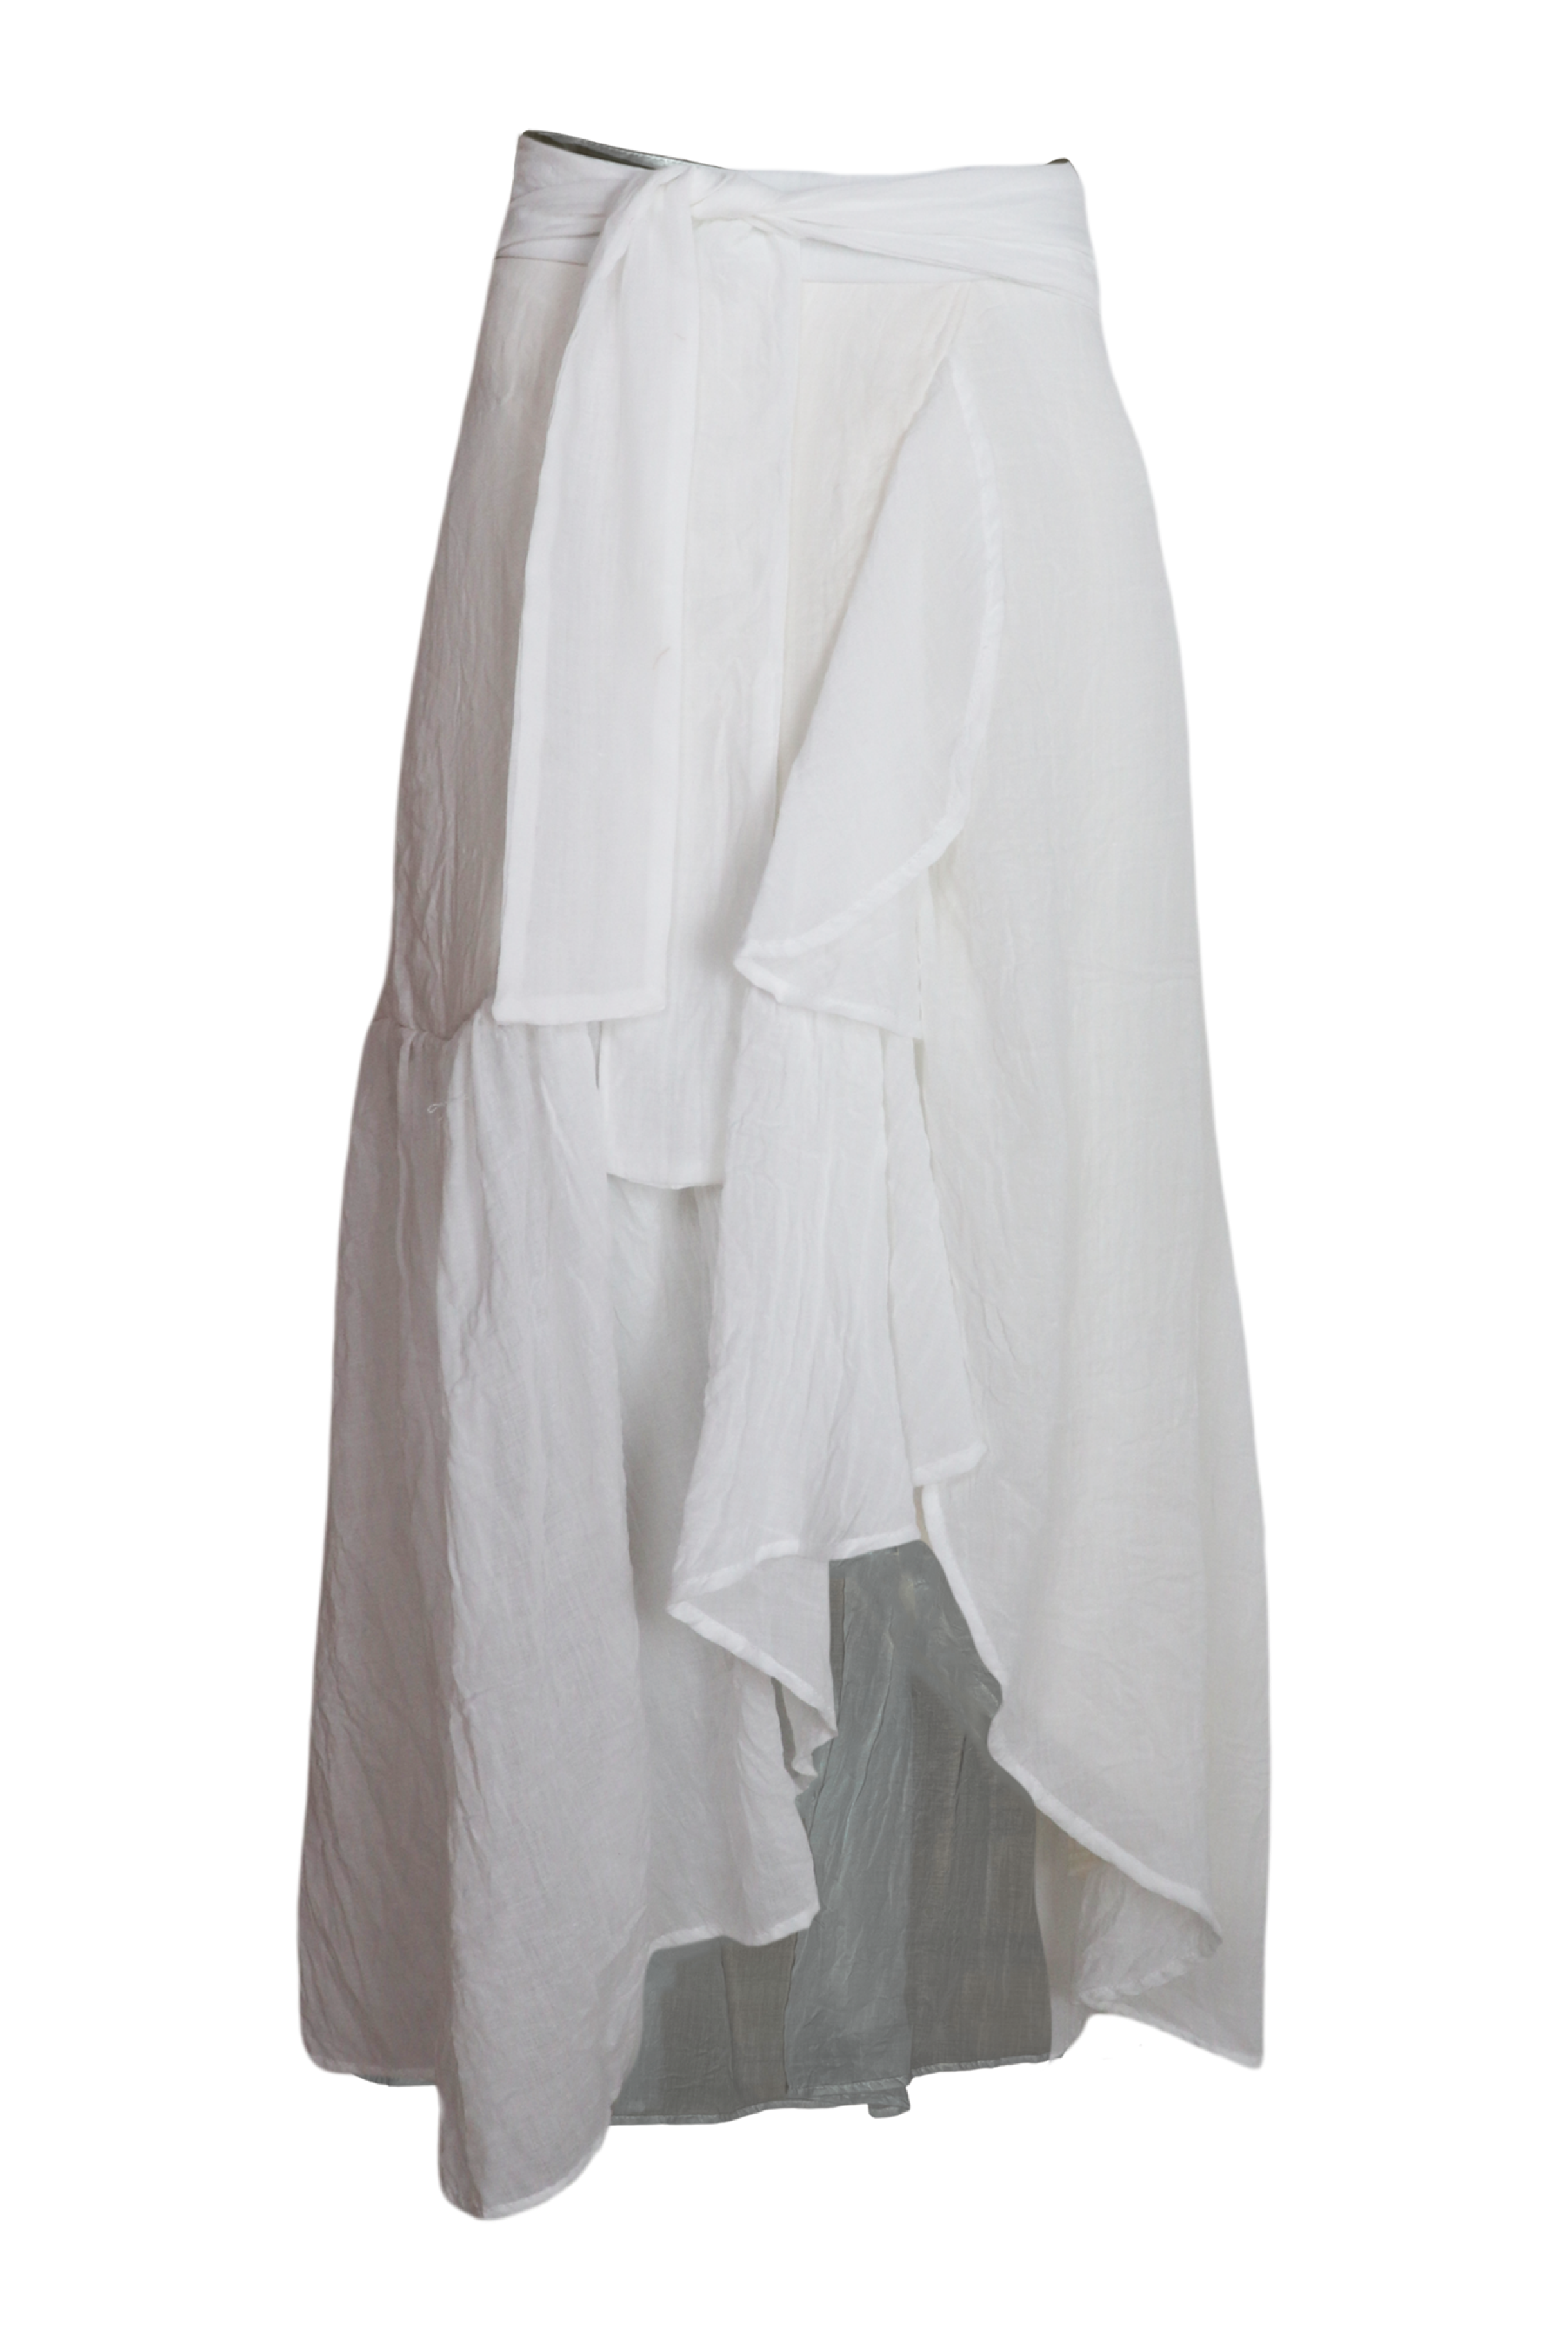 Hermosa falda midi con lazos para ajustar en cintura color blanco